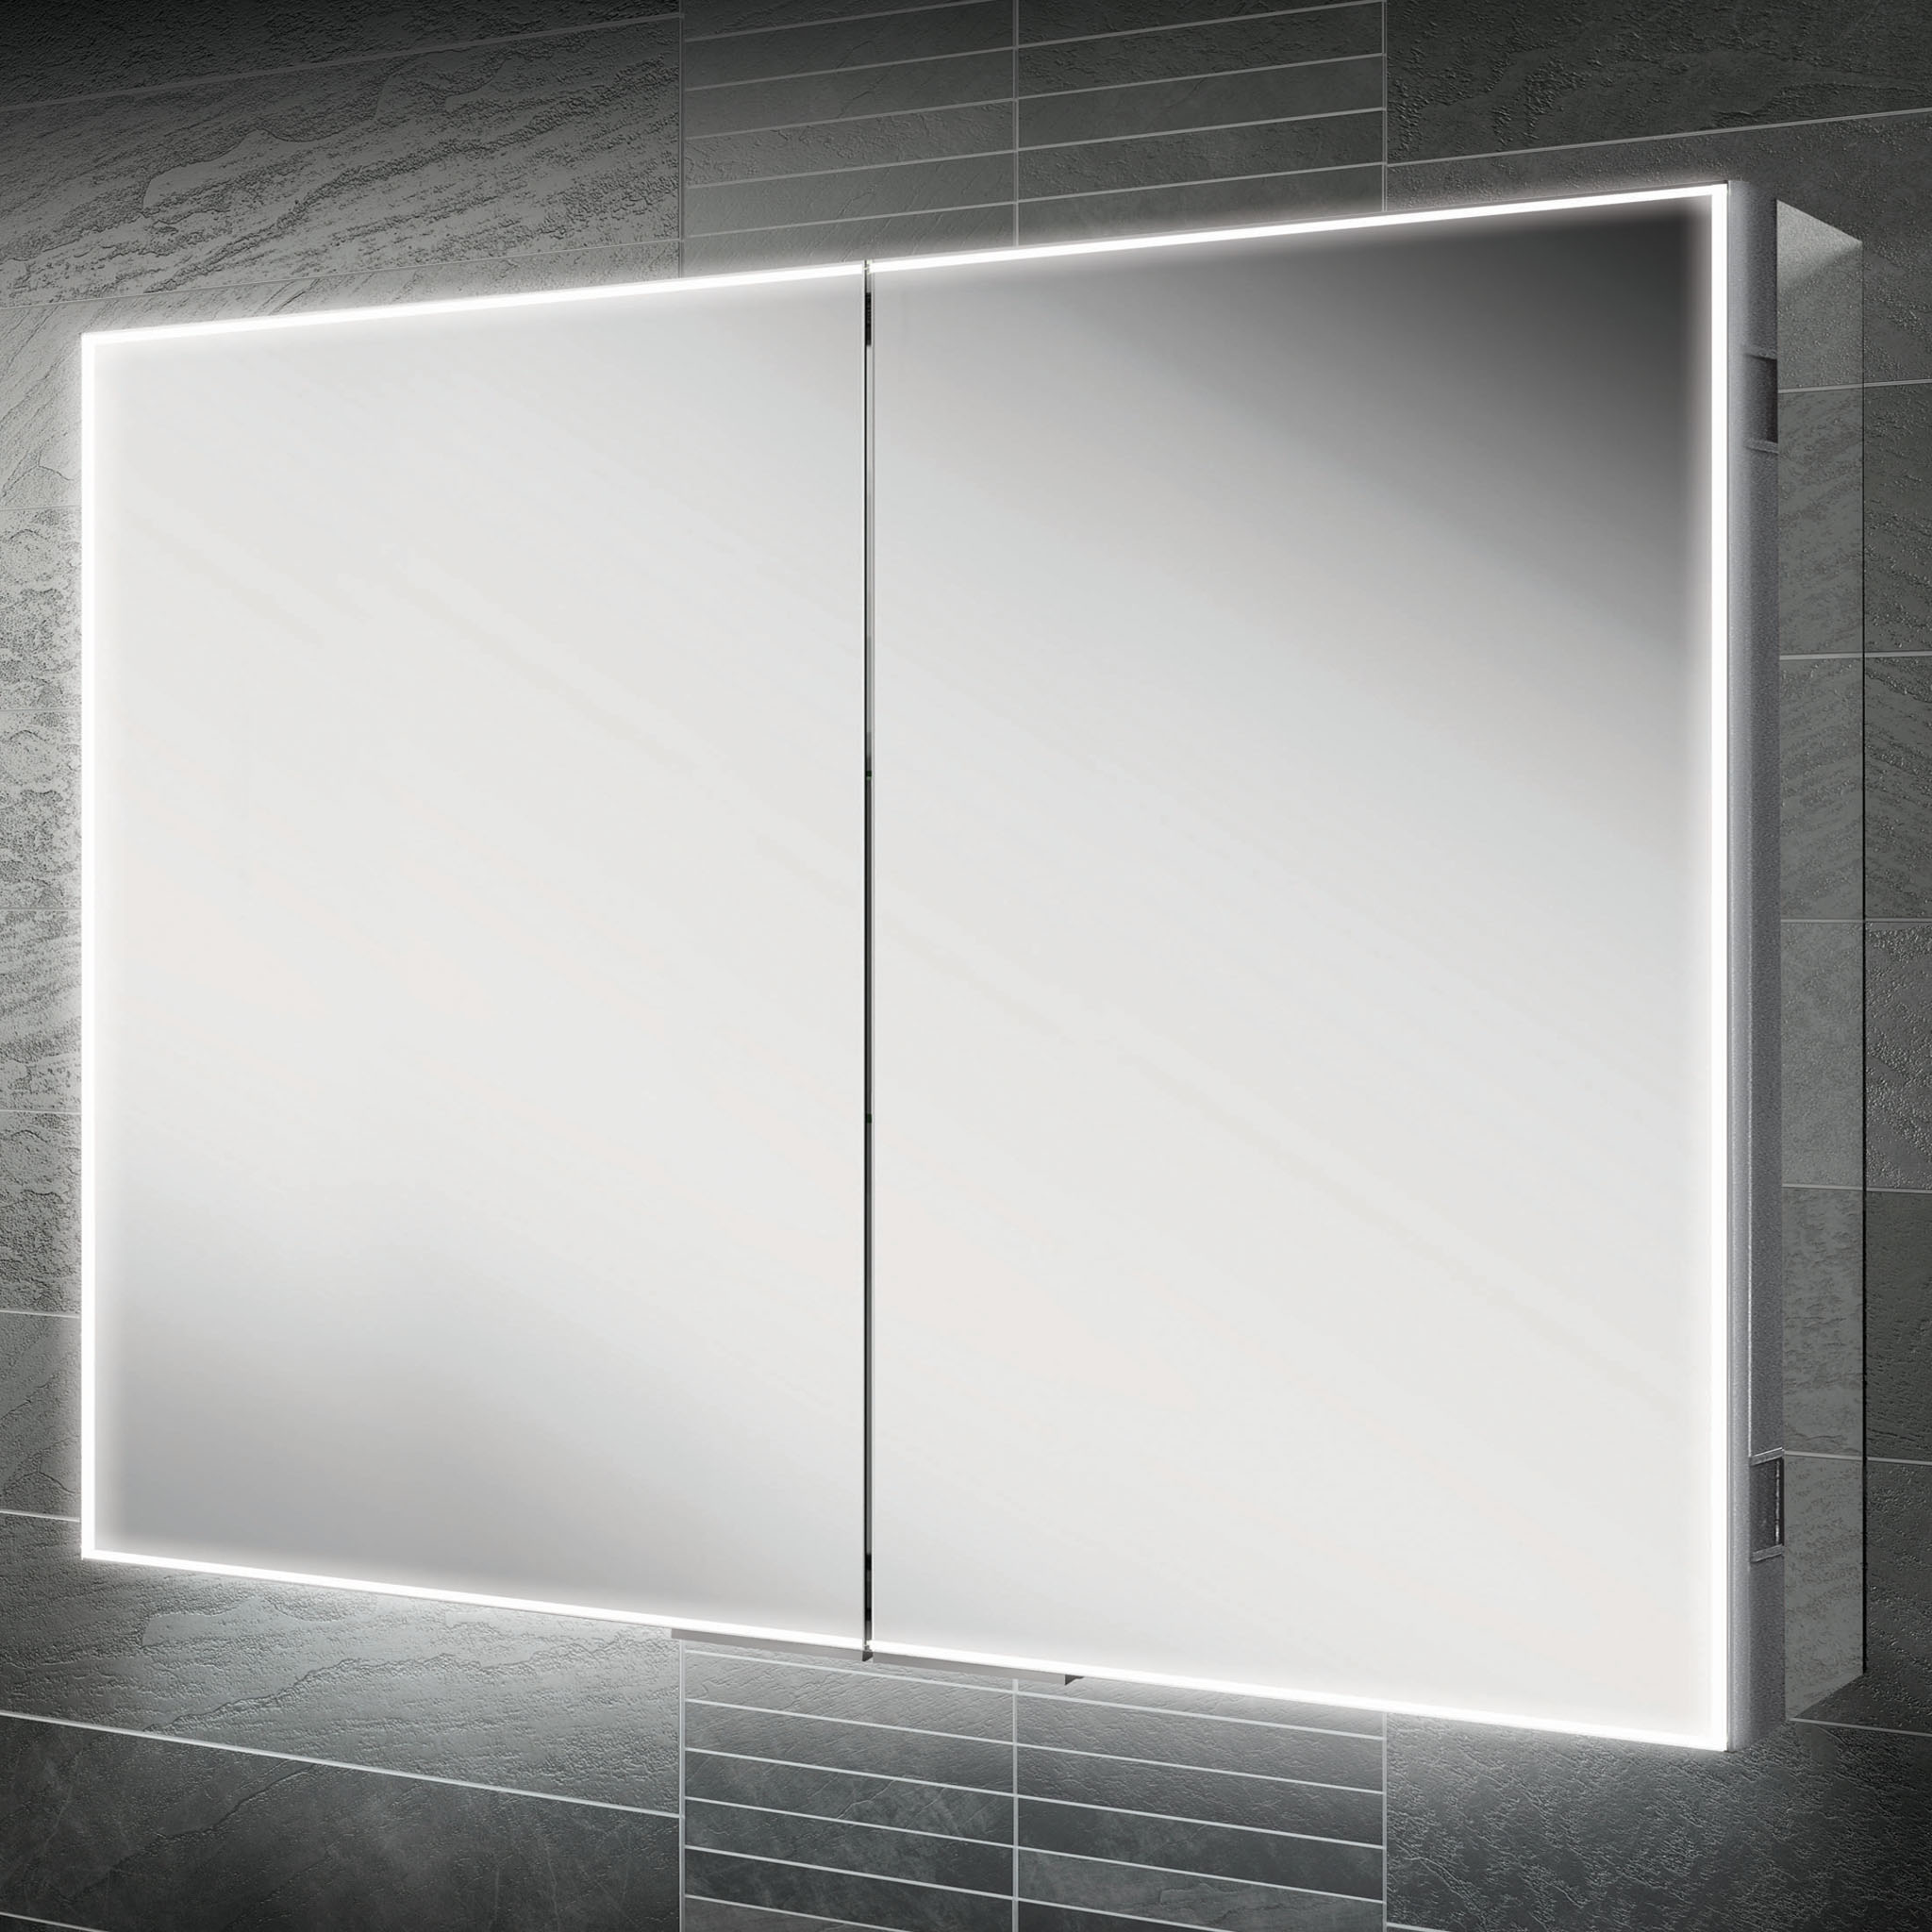 HiB Exos 120 LED Mirror Cabinet 120 x 70cm